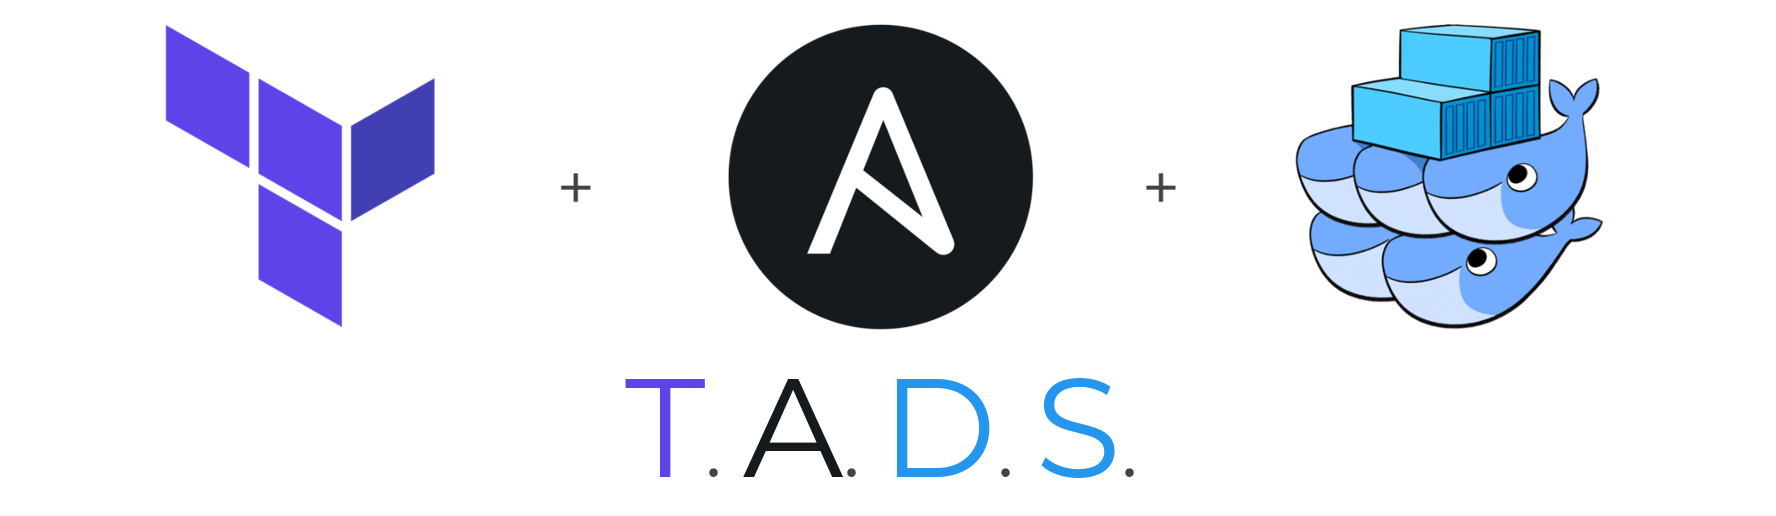 T.A.D.S. logo